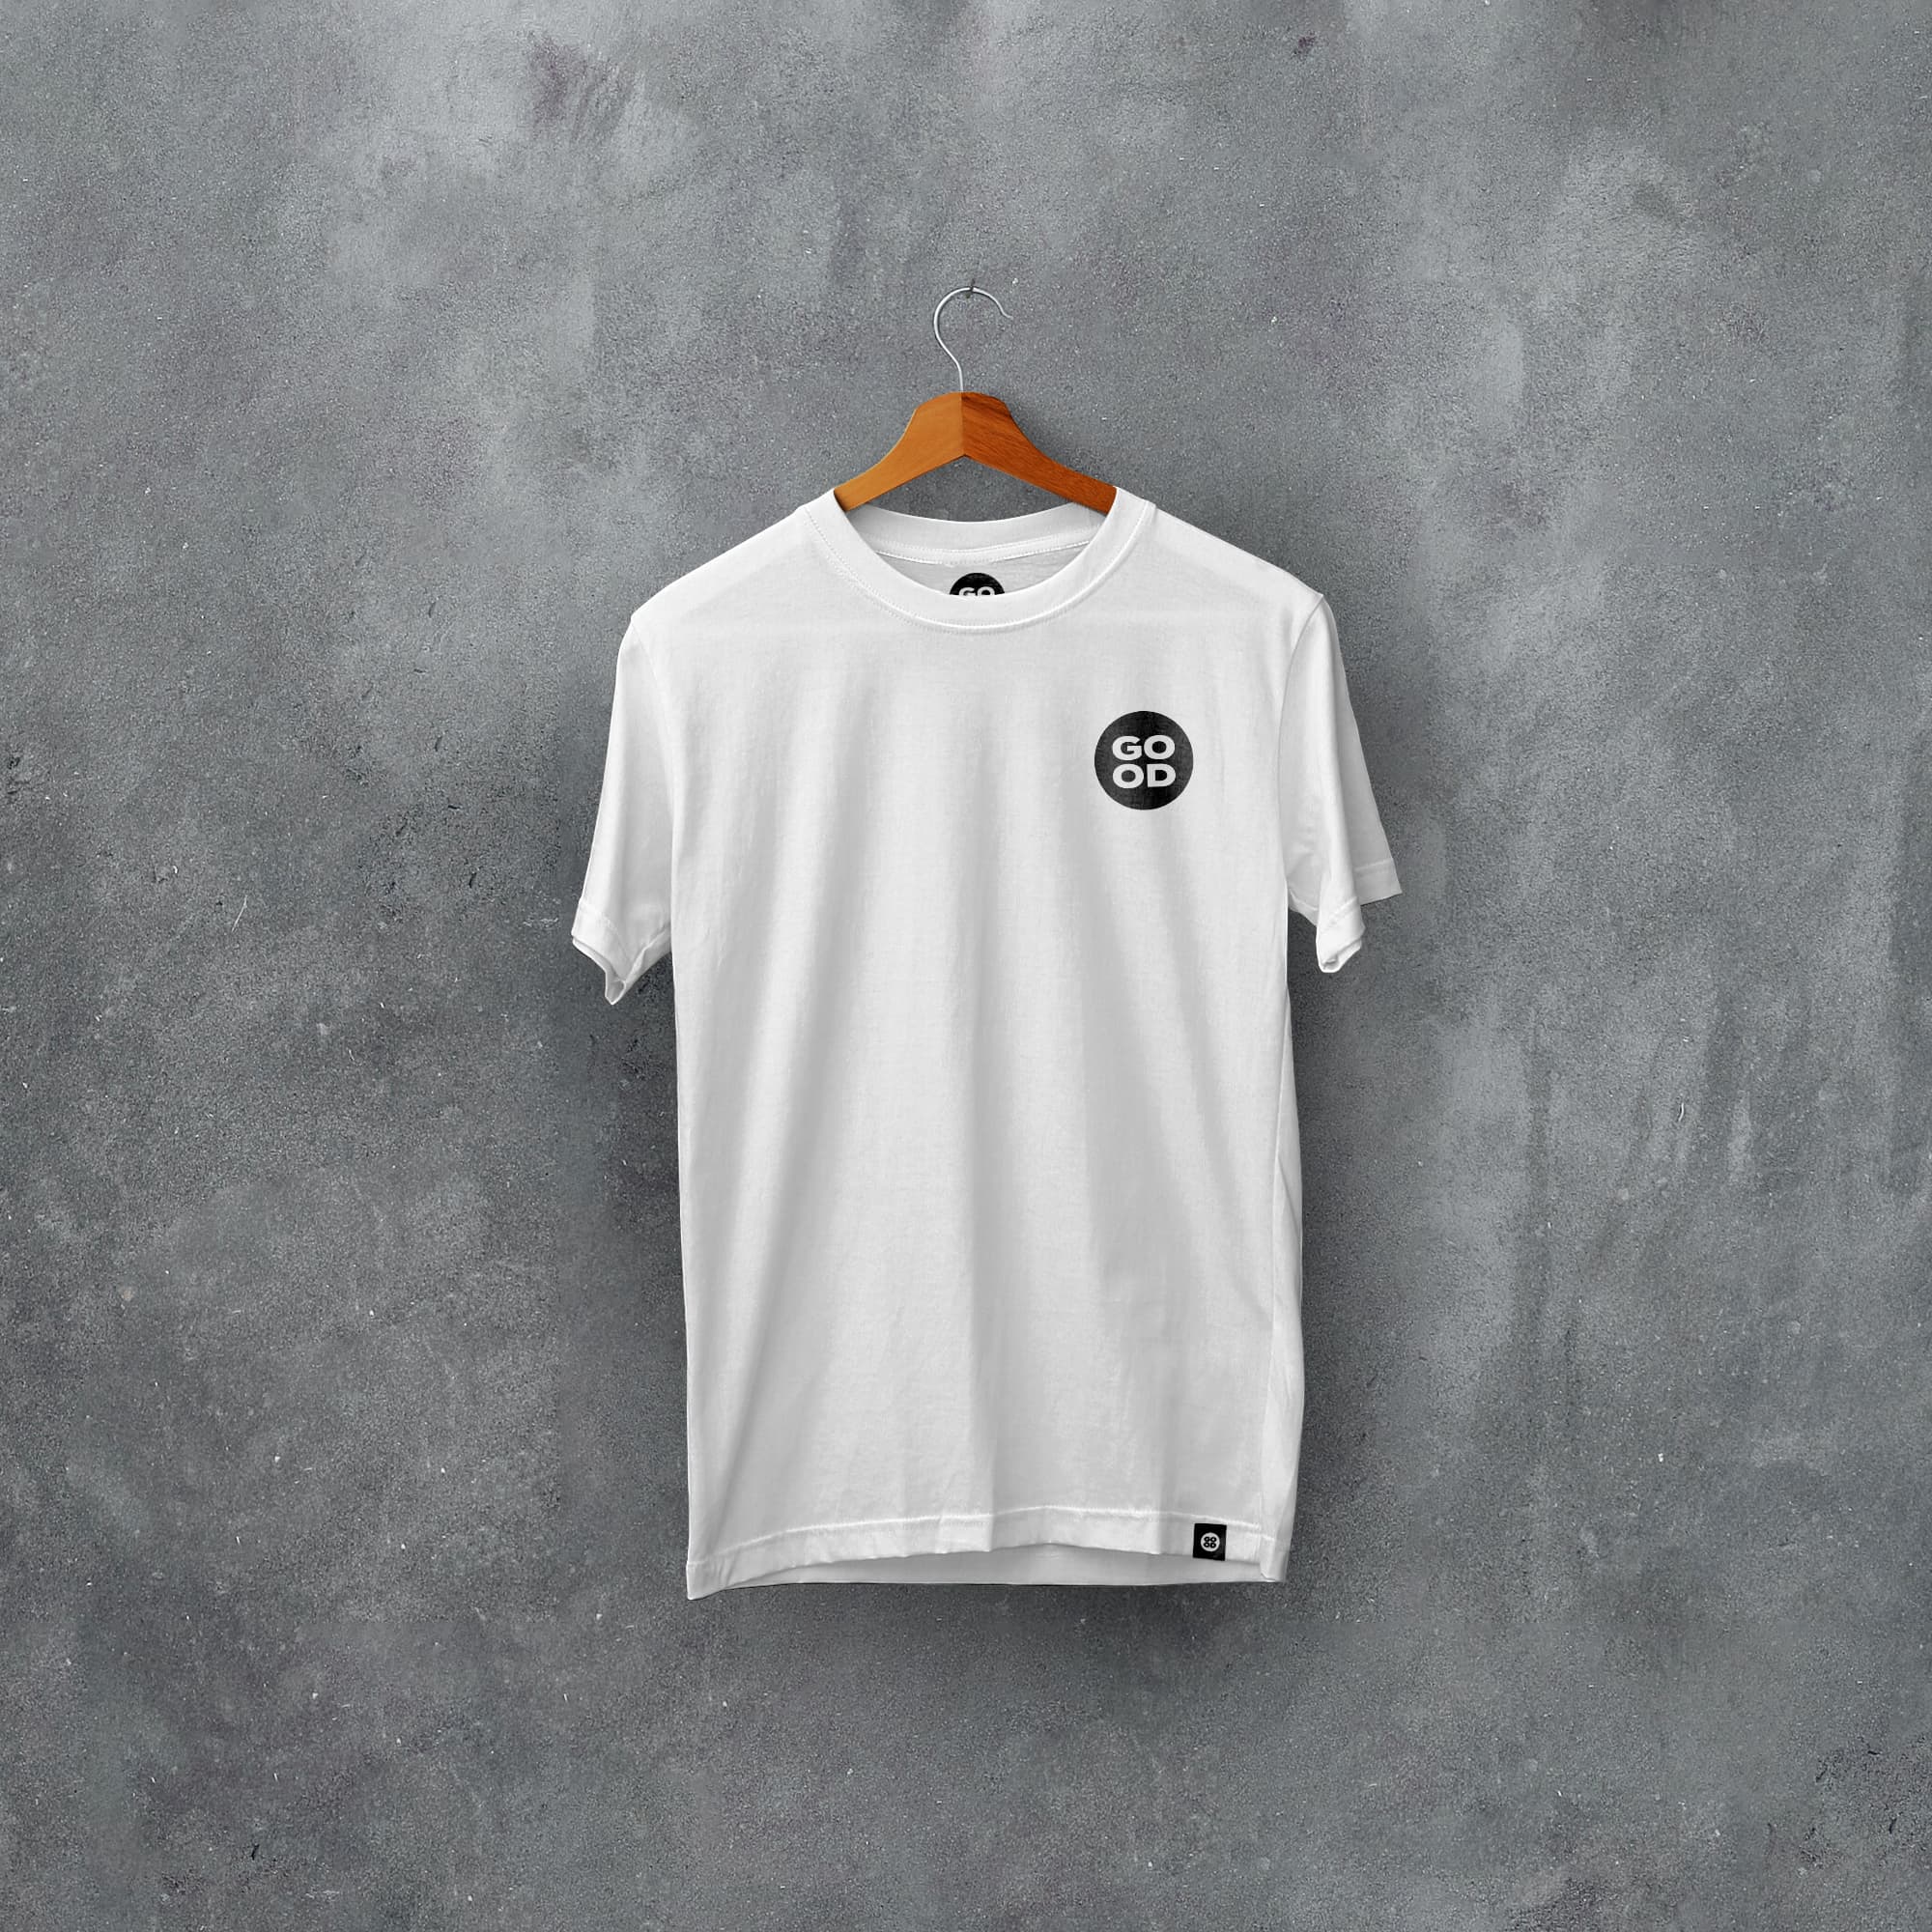 Rayo Vallecano Classic Kits Football T-Shirt